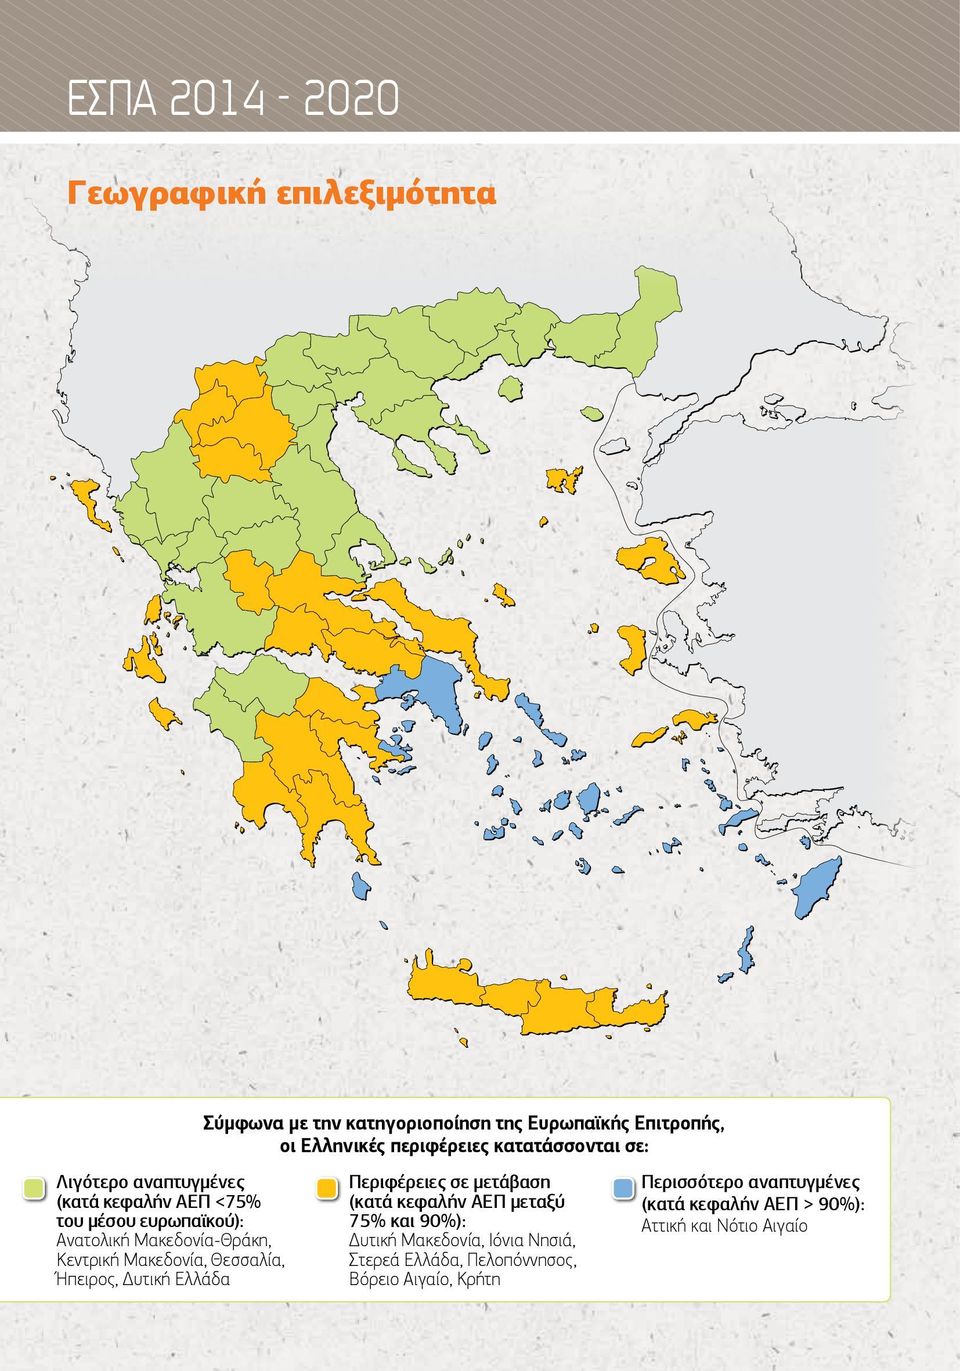 οι Ελληνικές περιφέρειες κατατάσσονται σε: Περιφέρειες σε μετάβαση (κατά κεφαλήν ΑΕΠ μεταξύ 75% και 90%): Δυτική Μακεδονία,